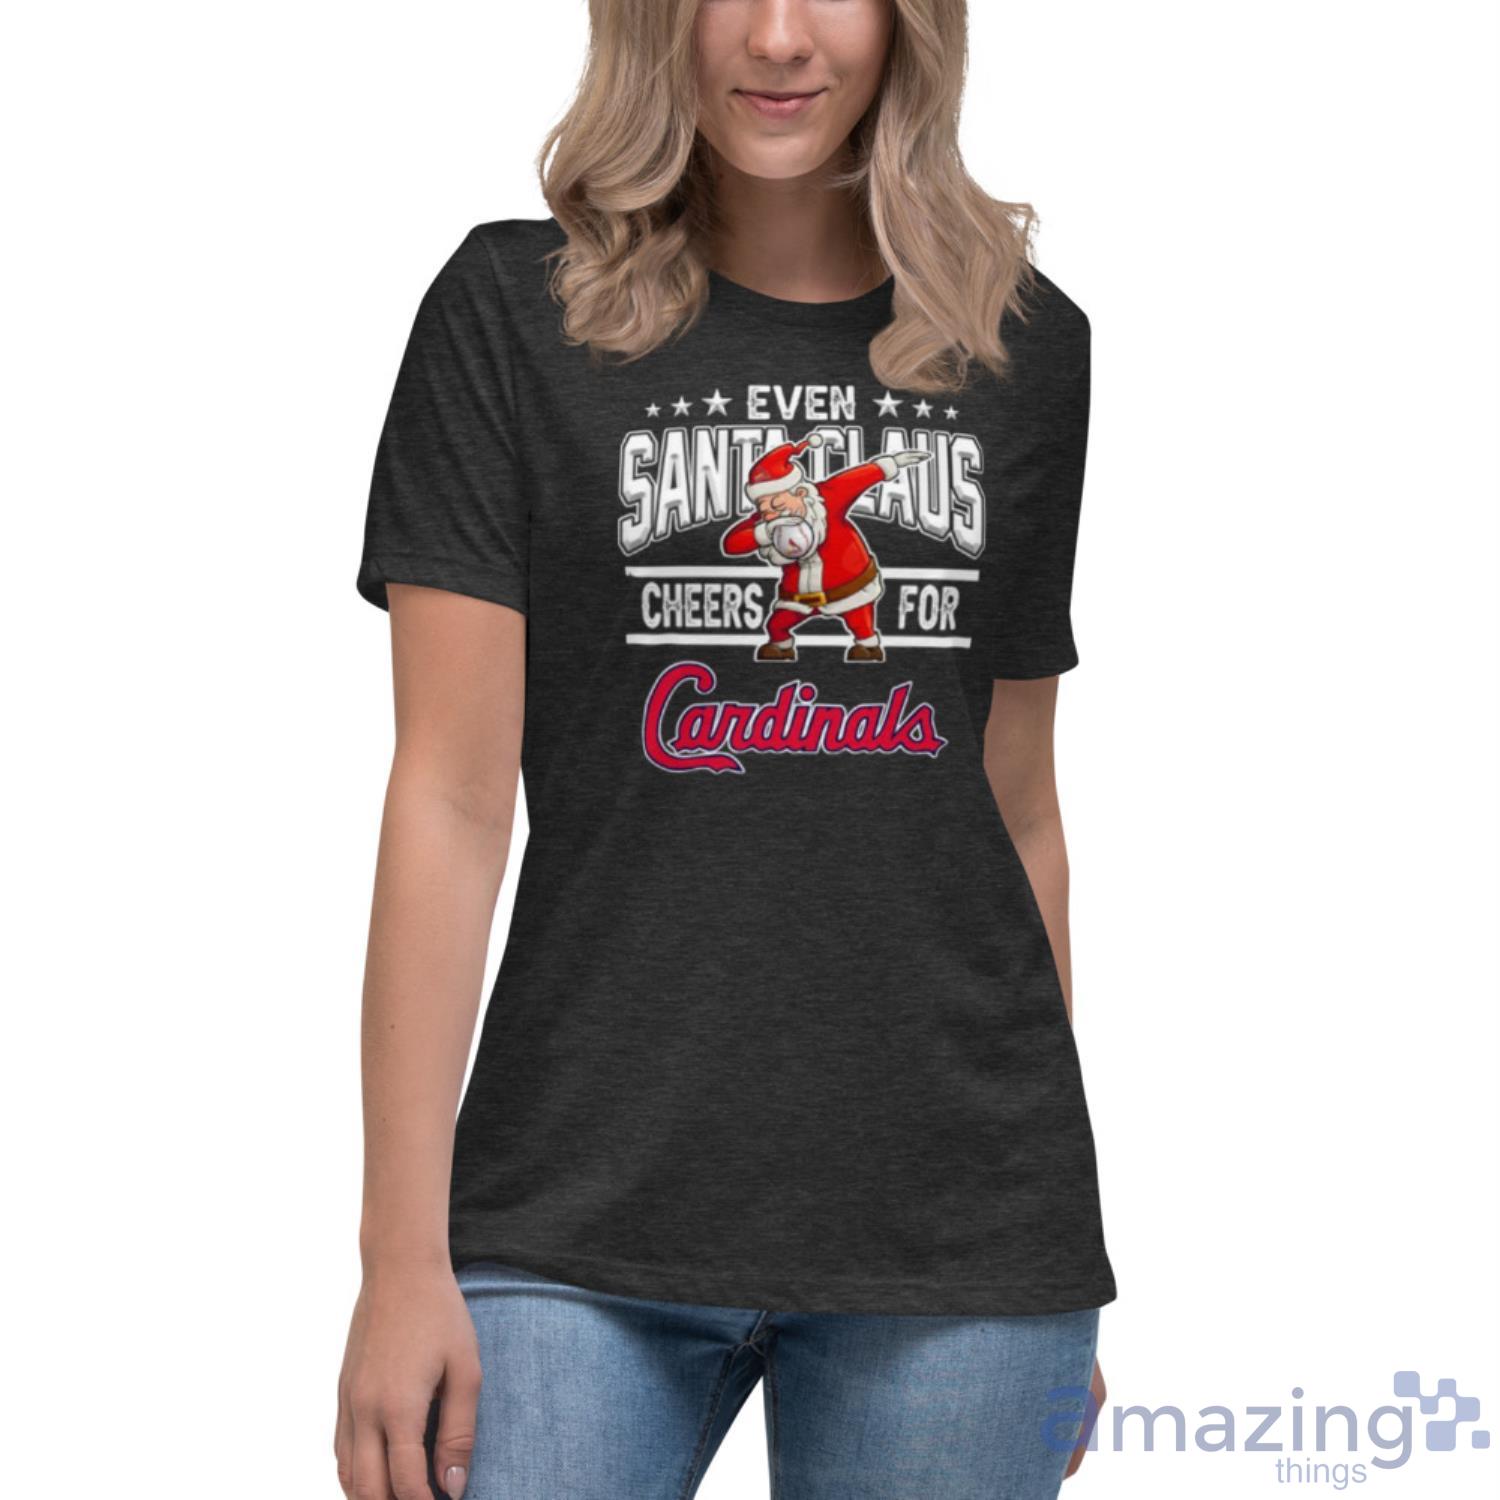 Tops, Womens St Louis Cardinals Jersey Shirt